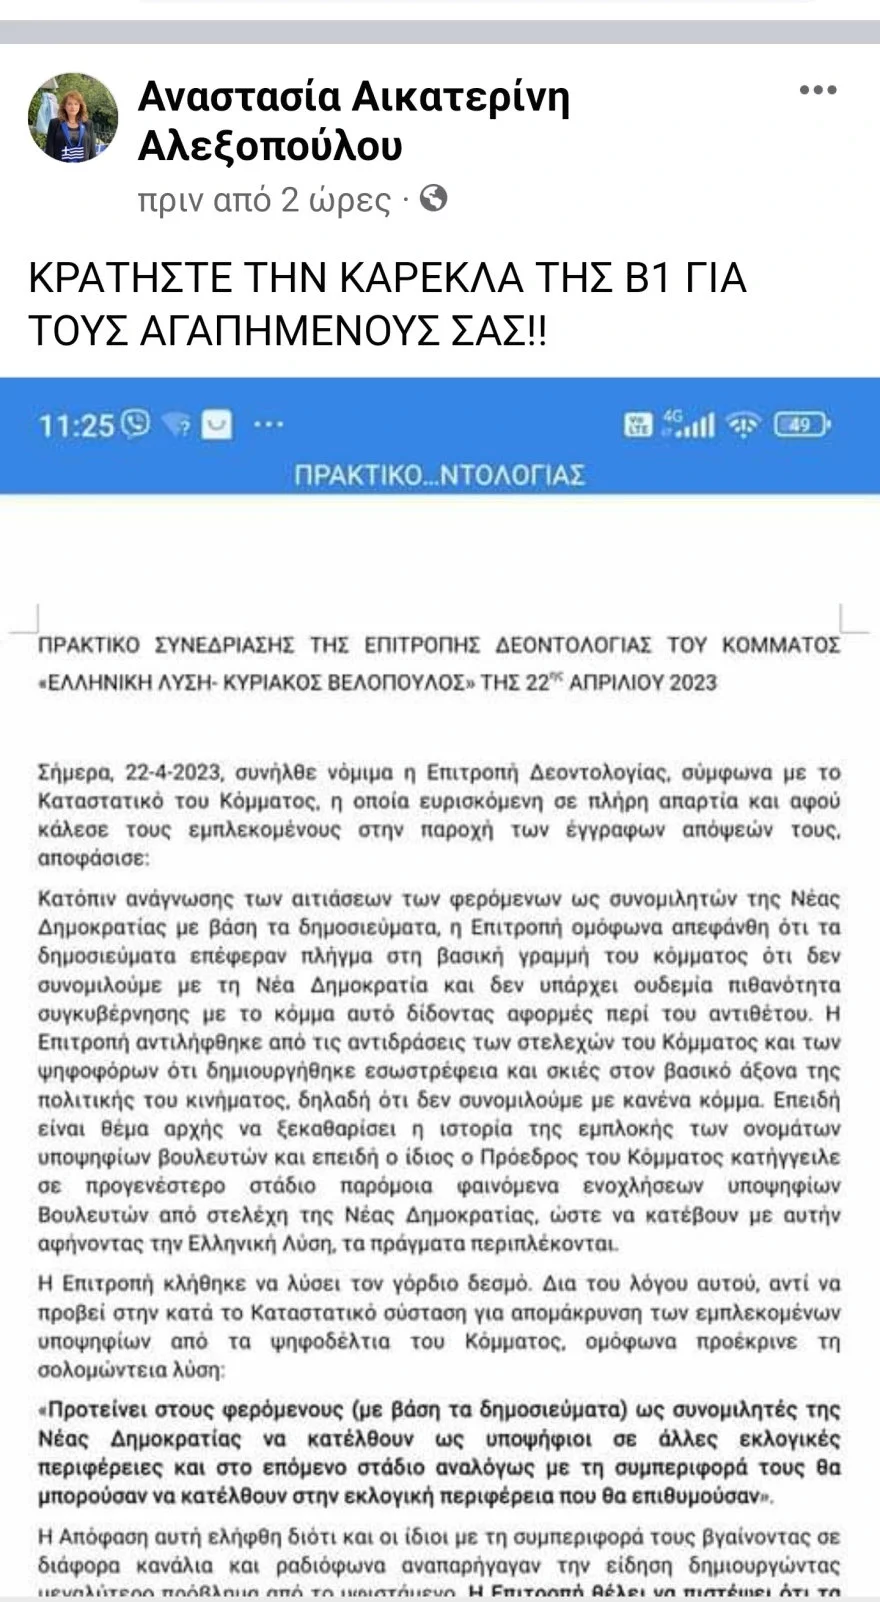 Αναστασία Αλεξοπούλου, Ελληνική Λύση